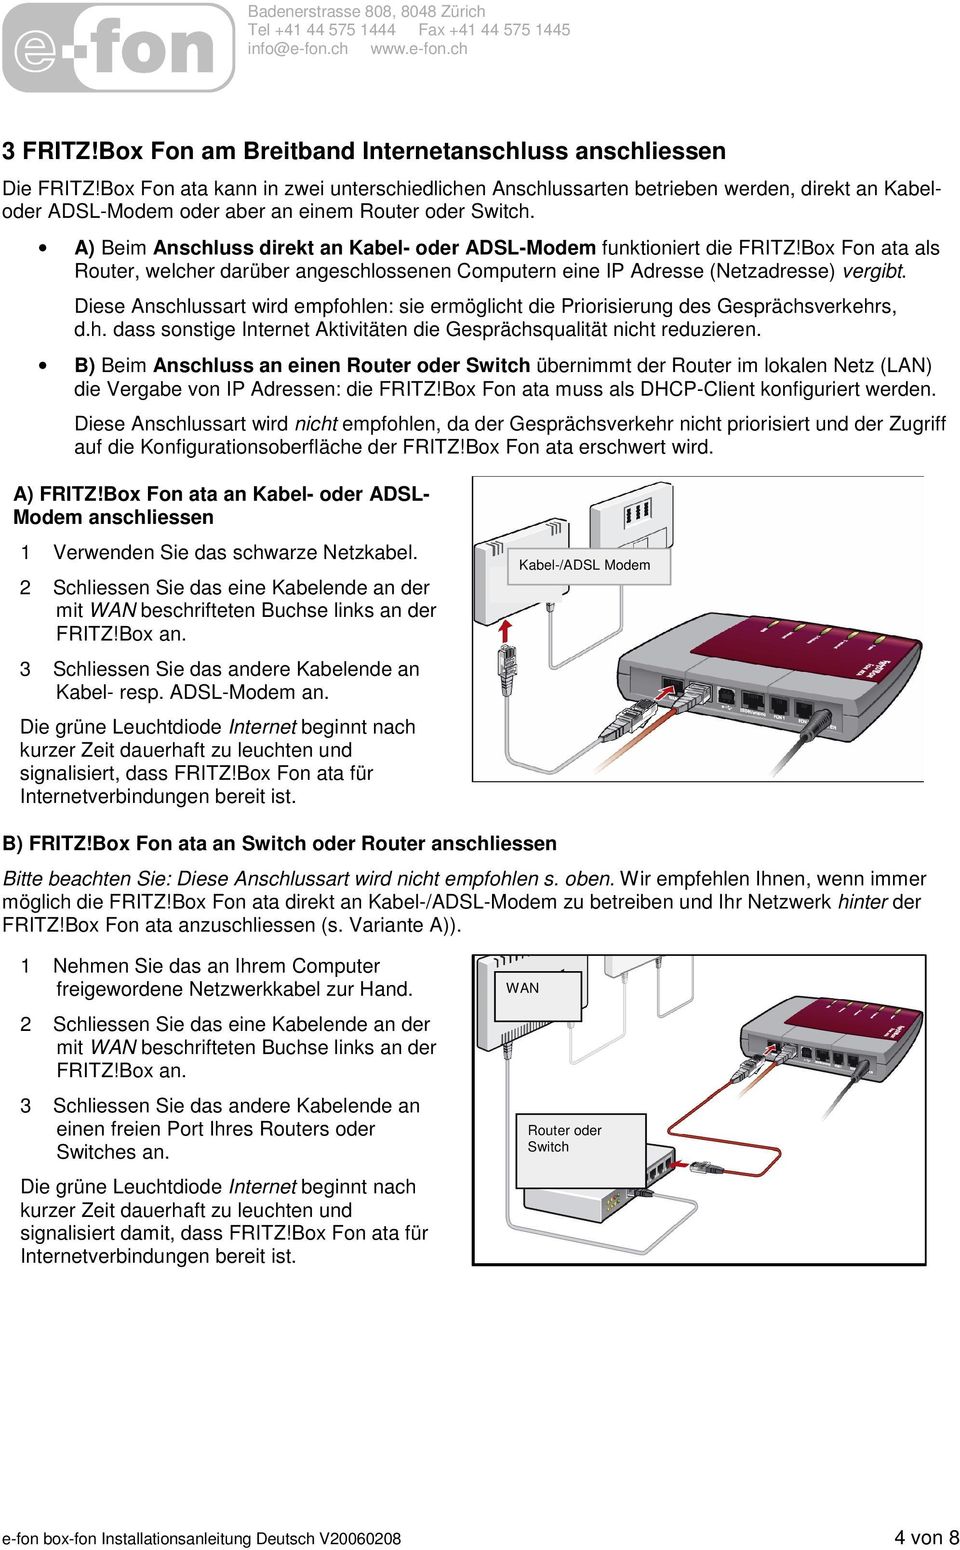 A) Beim Anschluss direkt an Kabel- oder ADSL-Modem funktioniert die FRITZ!Box Fon ata als Router, welcher darüber angeschlossenen Computern eine IP Adresse (Netzadresse) vergibt.